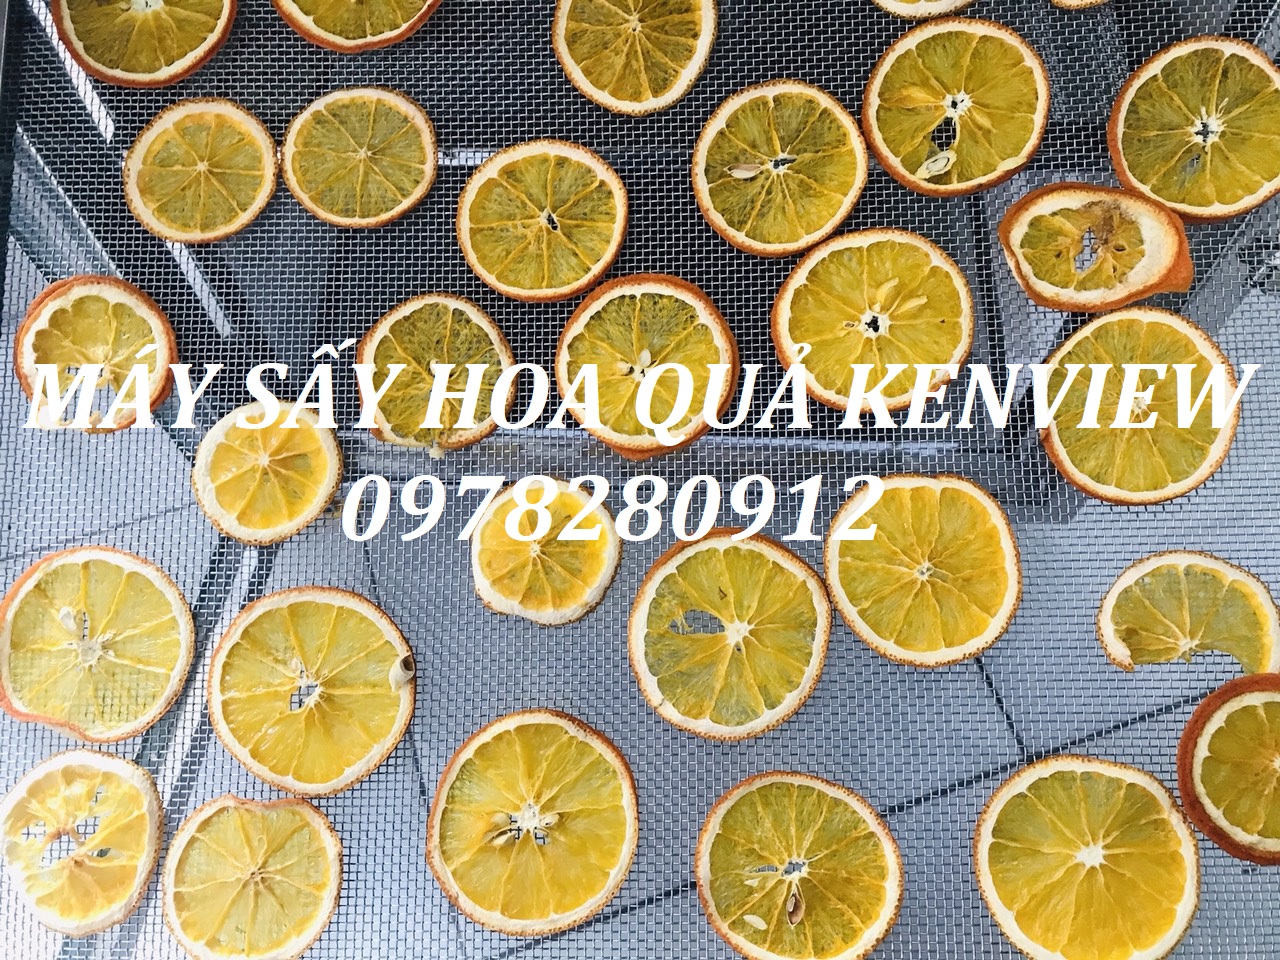 Kenview cung cấp máy sấy hoa quả tại Hải Dương. 0978280912